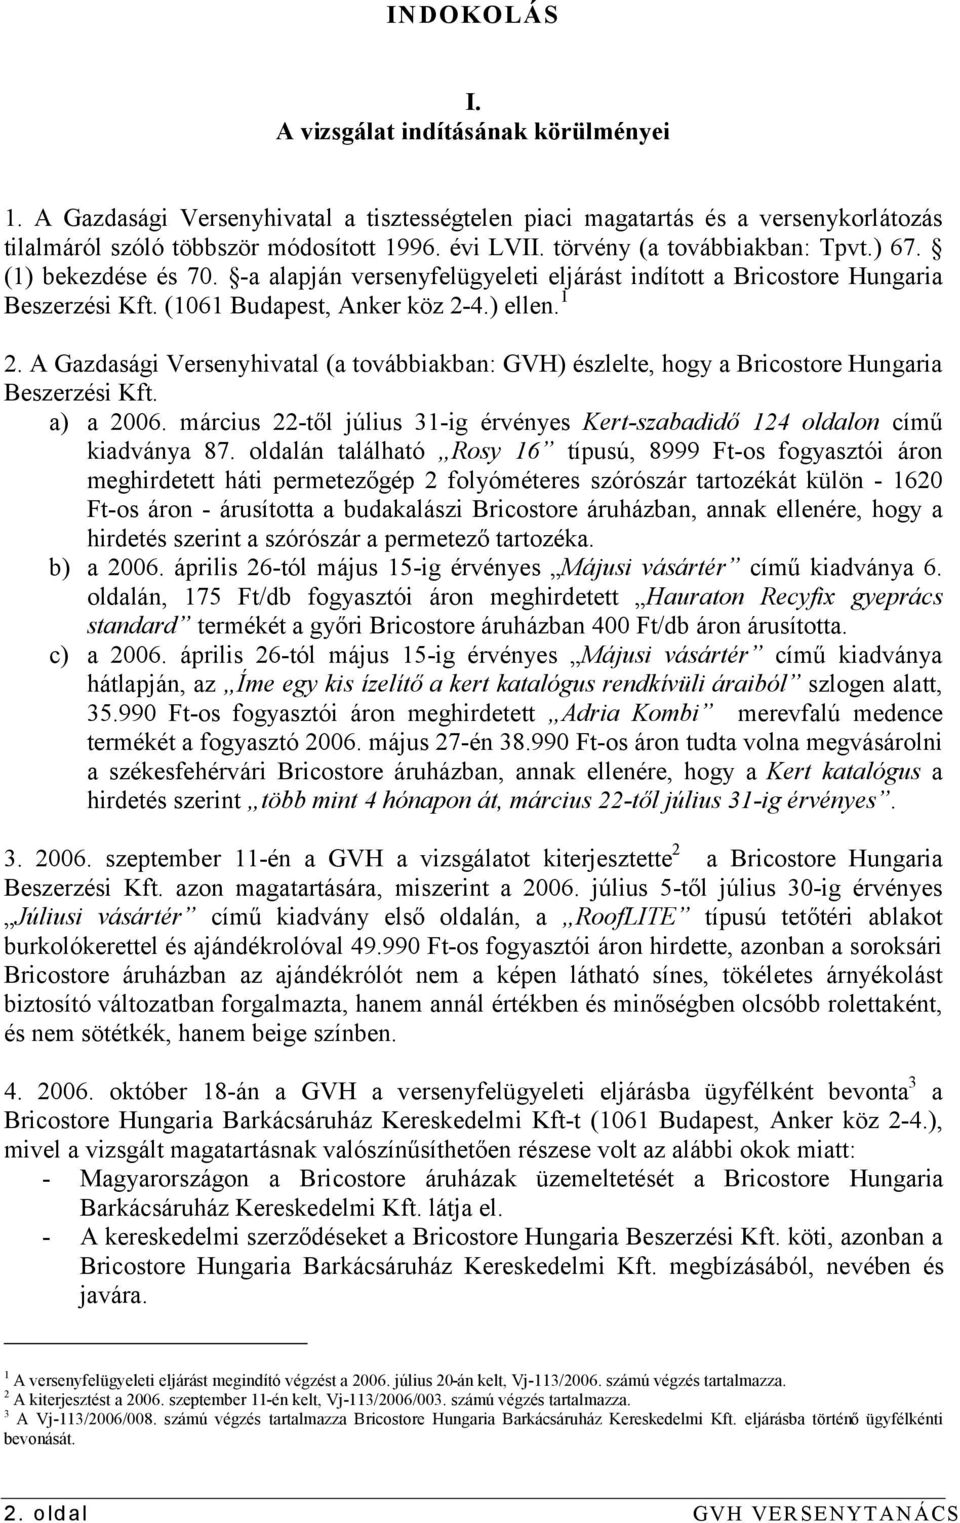 A Gazdasági Versenyhivatal (a továbbiakban: GVH) észlelte, hogy a Bricostore Hungaria Beszerzési Kft. a) a 2006. március 22-től július 31-ig érvényes Kert-szabadidő 124 oldalon című kiadványa 87.